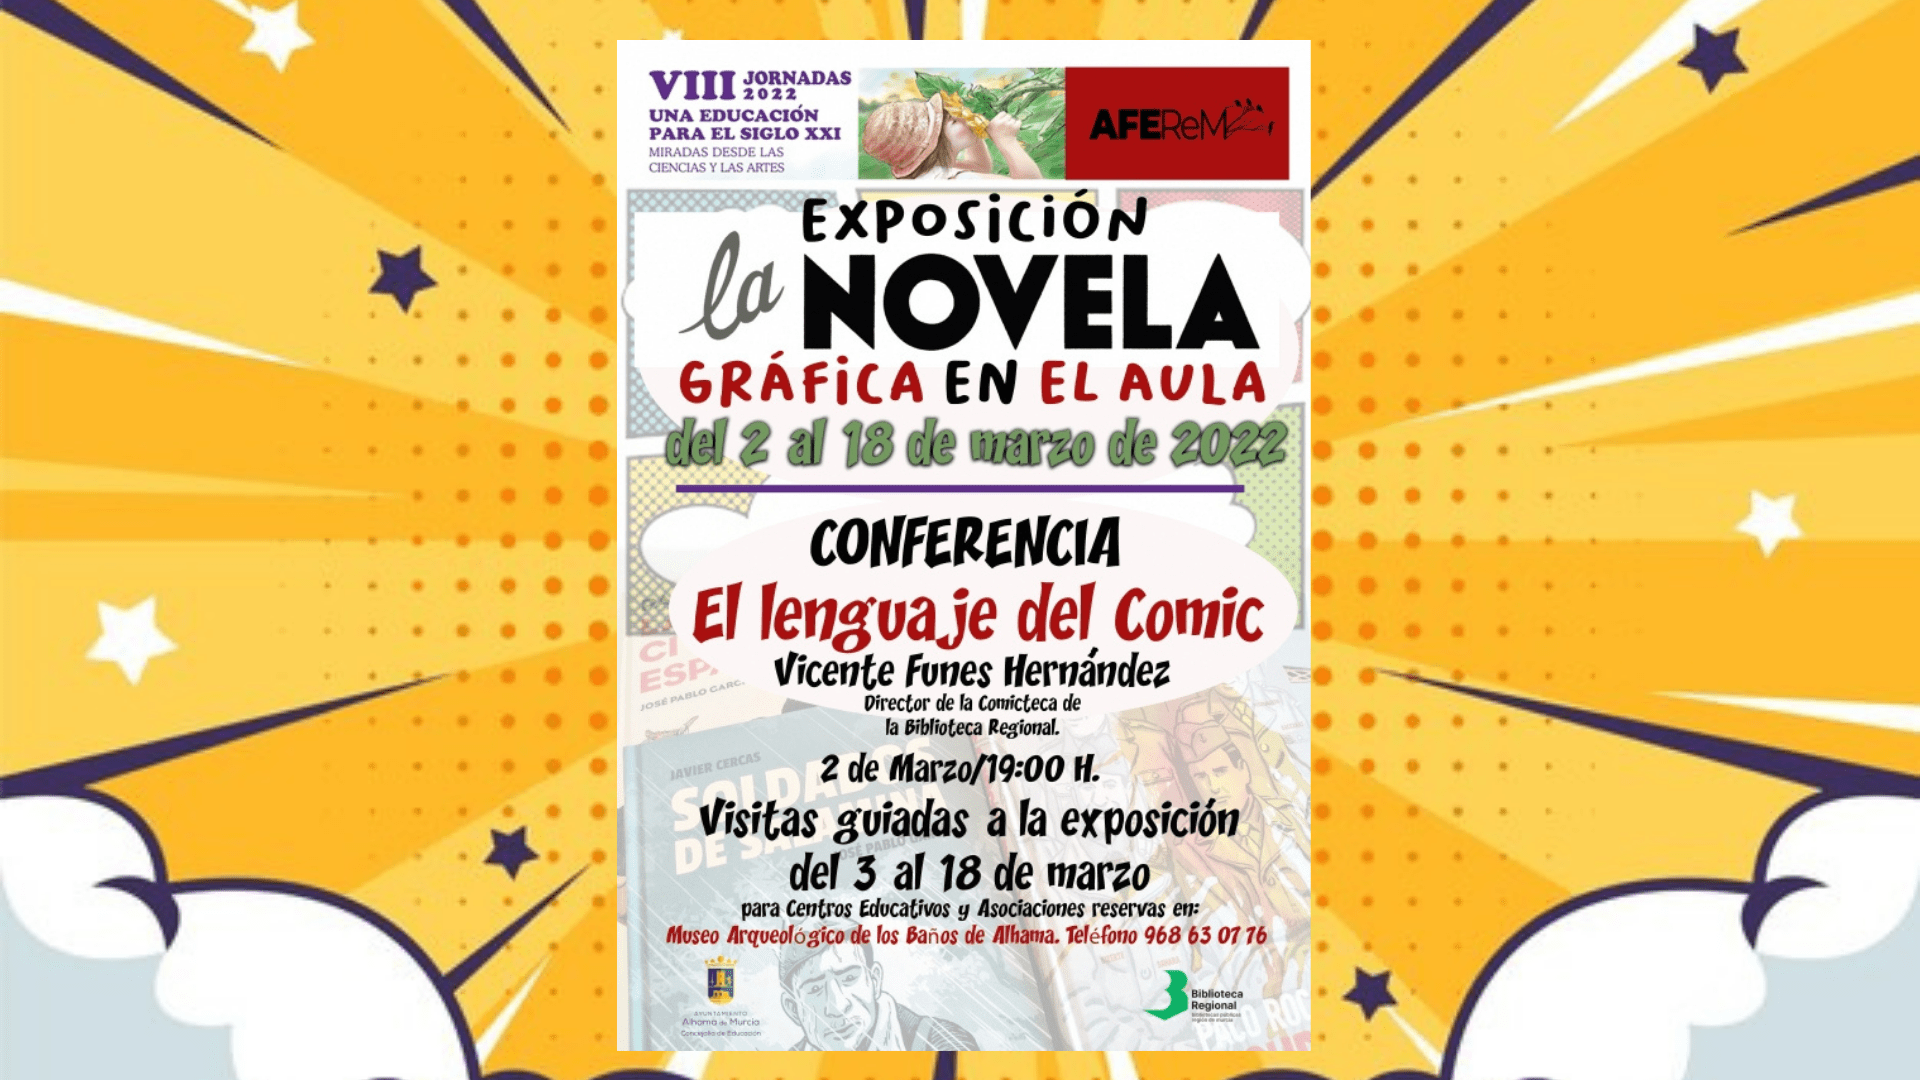 Conferencia ´El lenguaje del cómic´ y exposición ´La novela gráfica en el aula´: 2 de marzo en la casa de la cultura de Alhama de Murcia